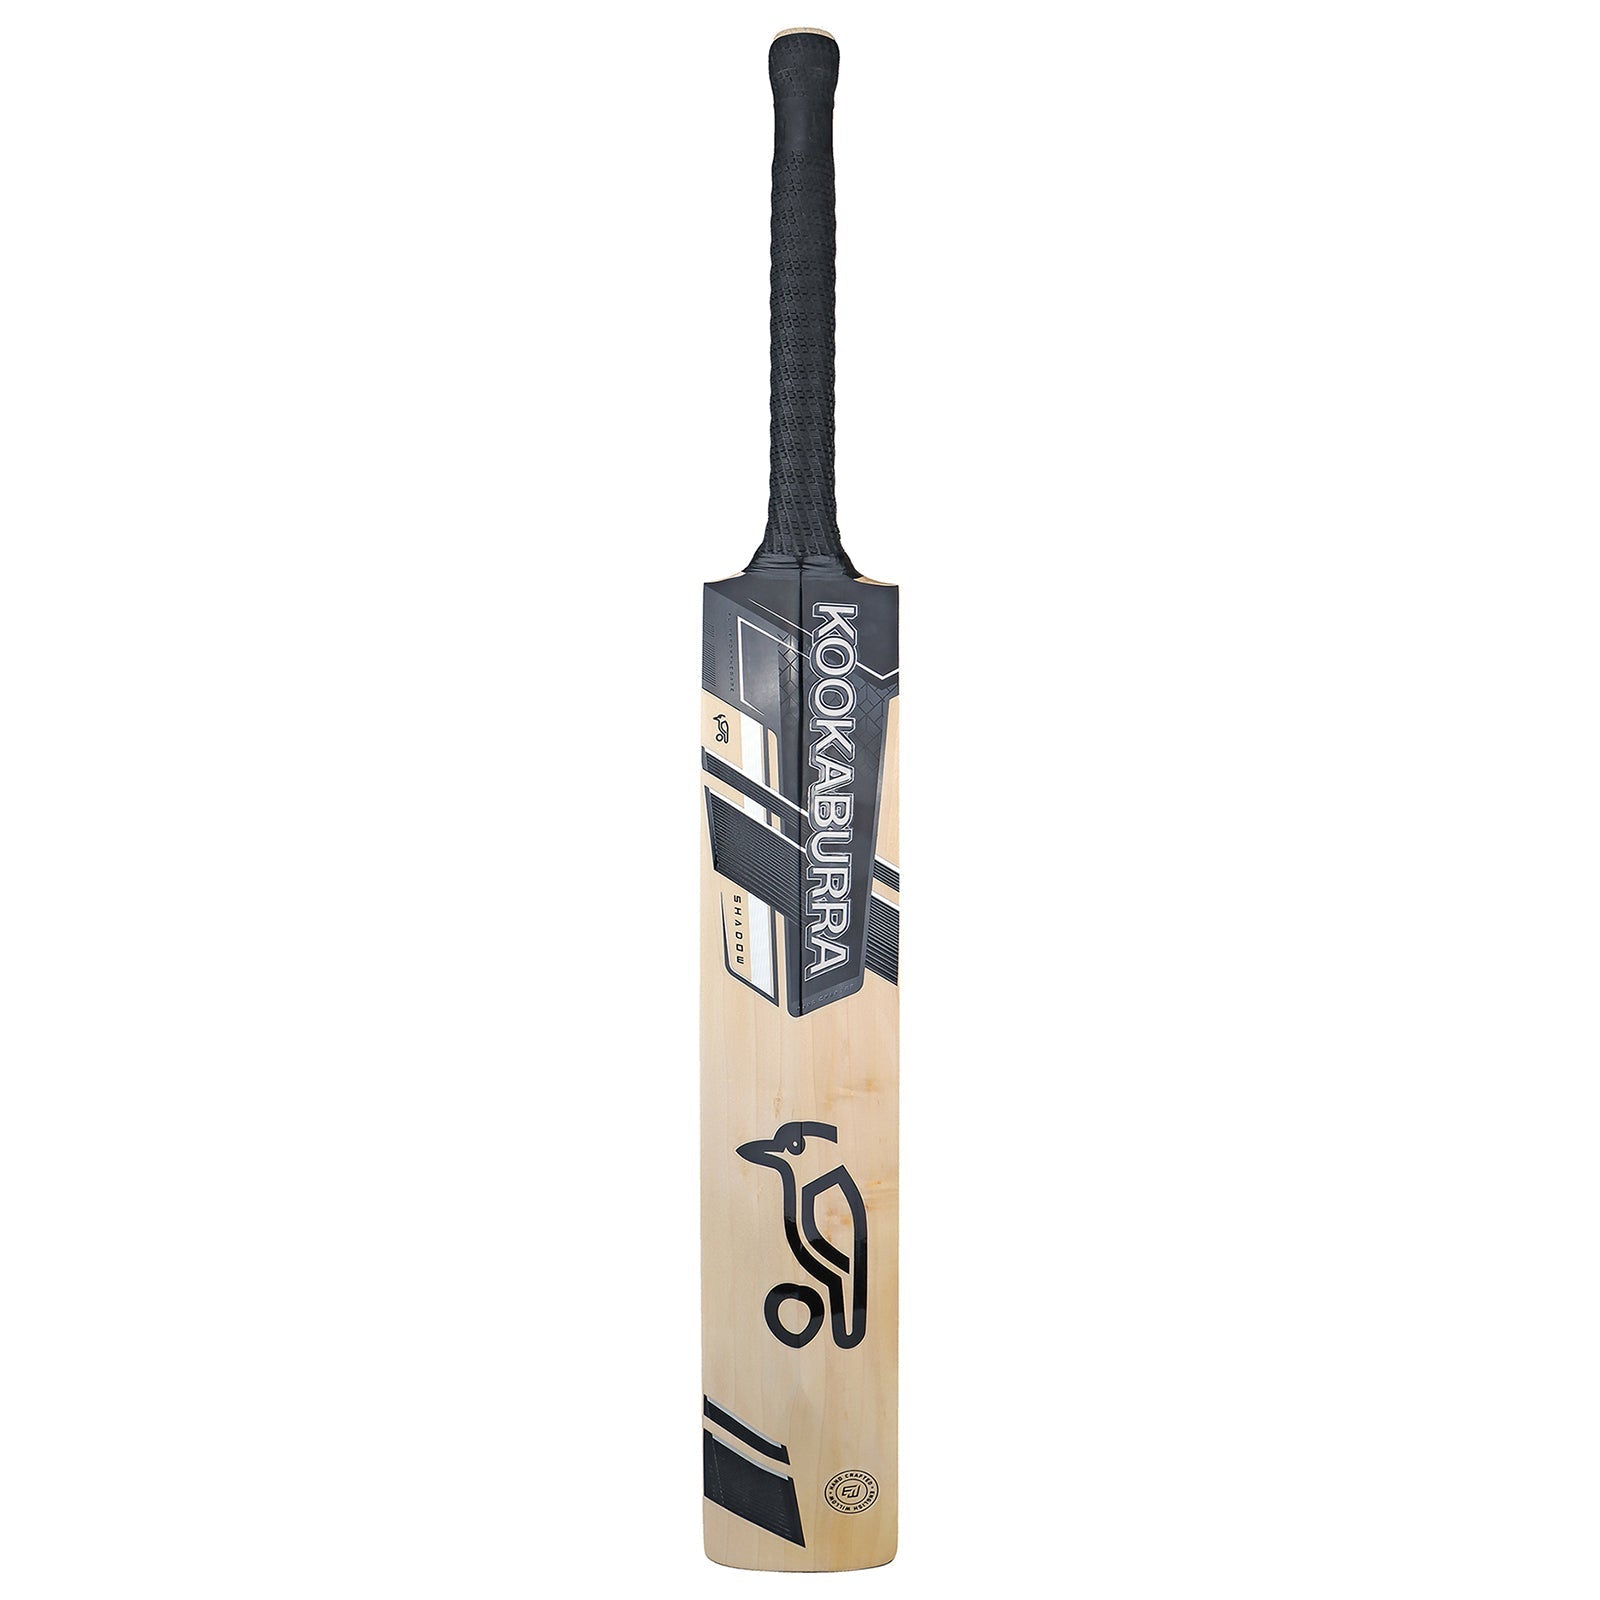 Kookaburra Shadow Pro 5.0 Cricket Bat - Harrow